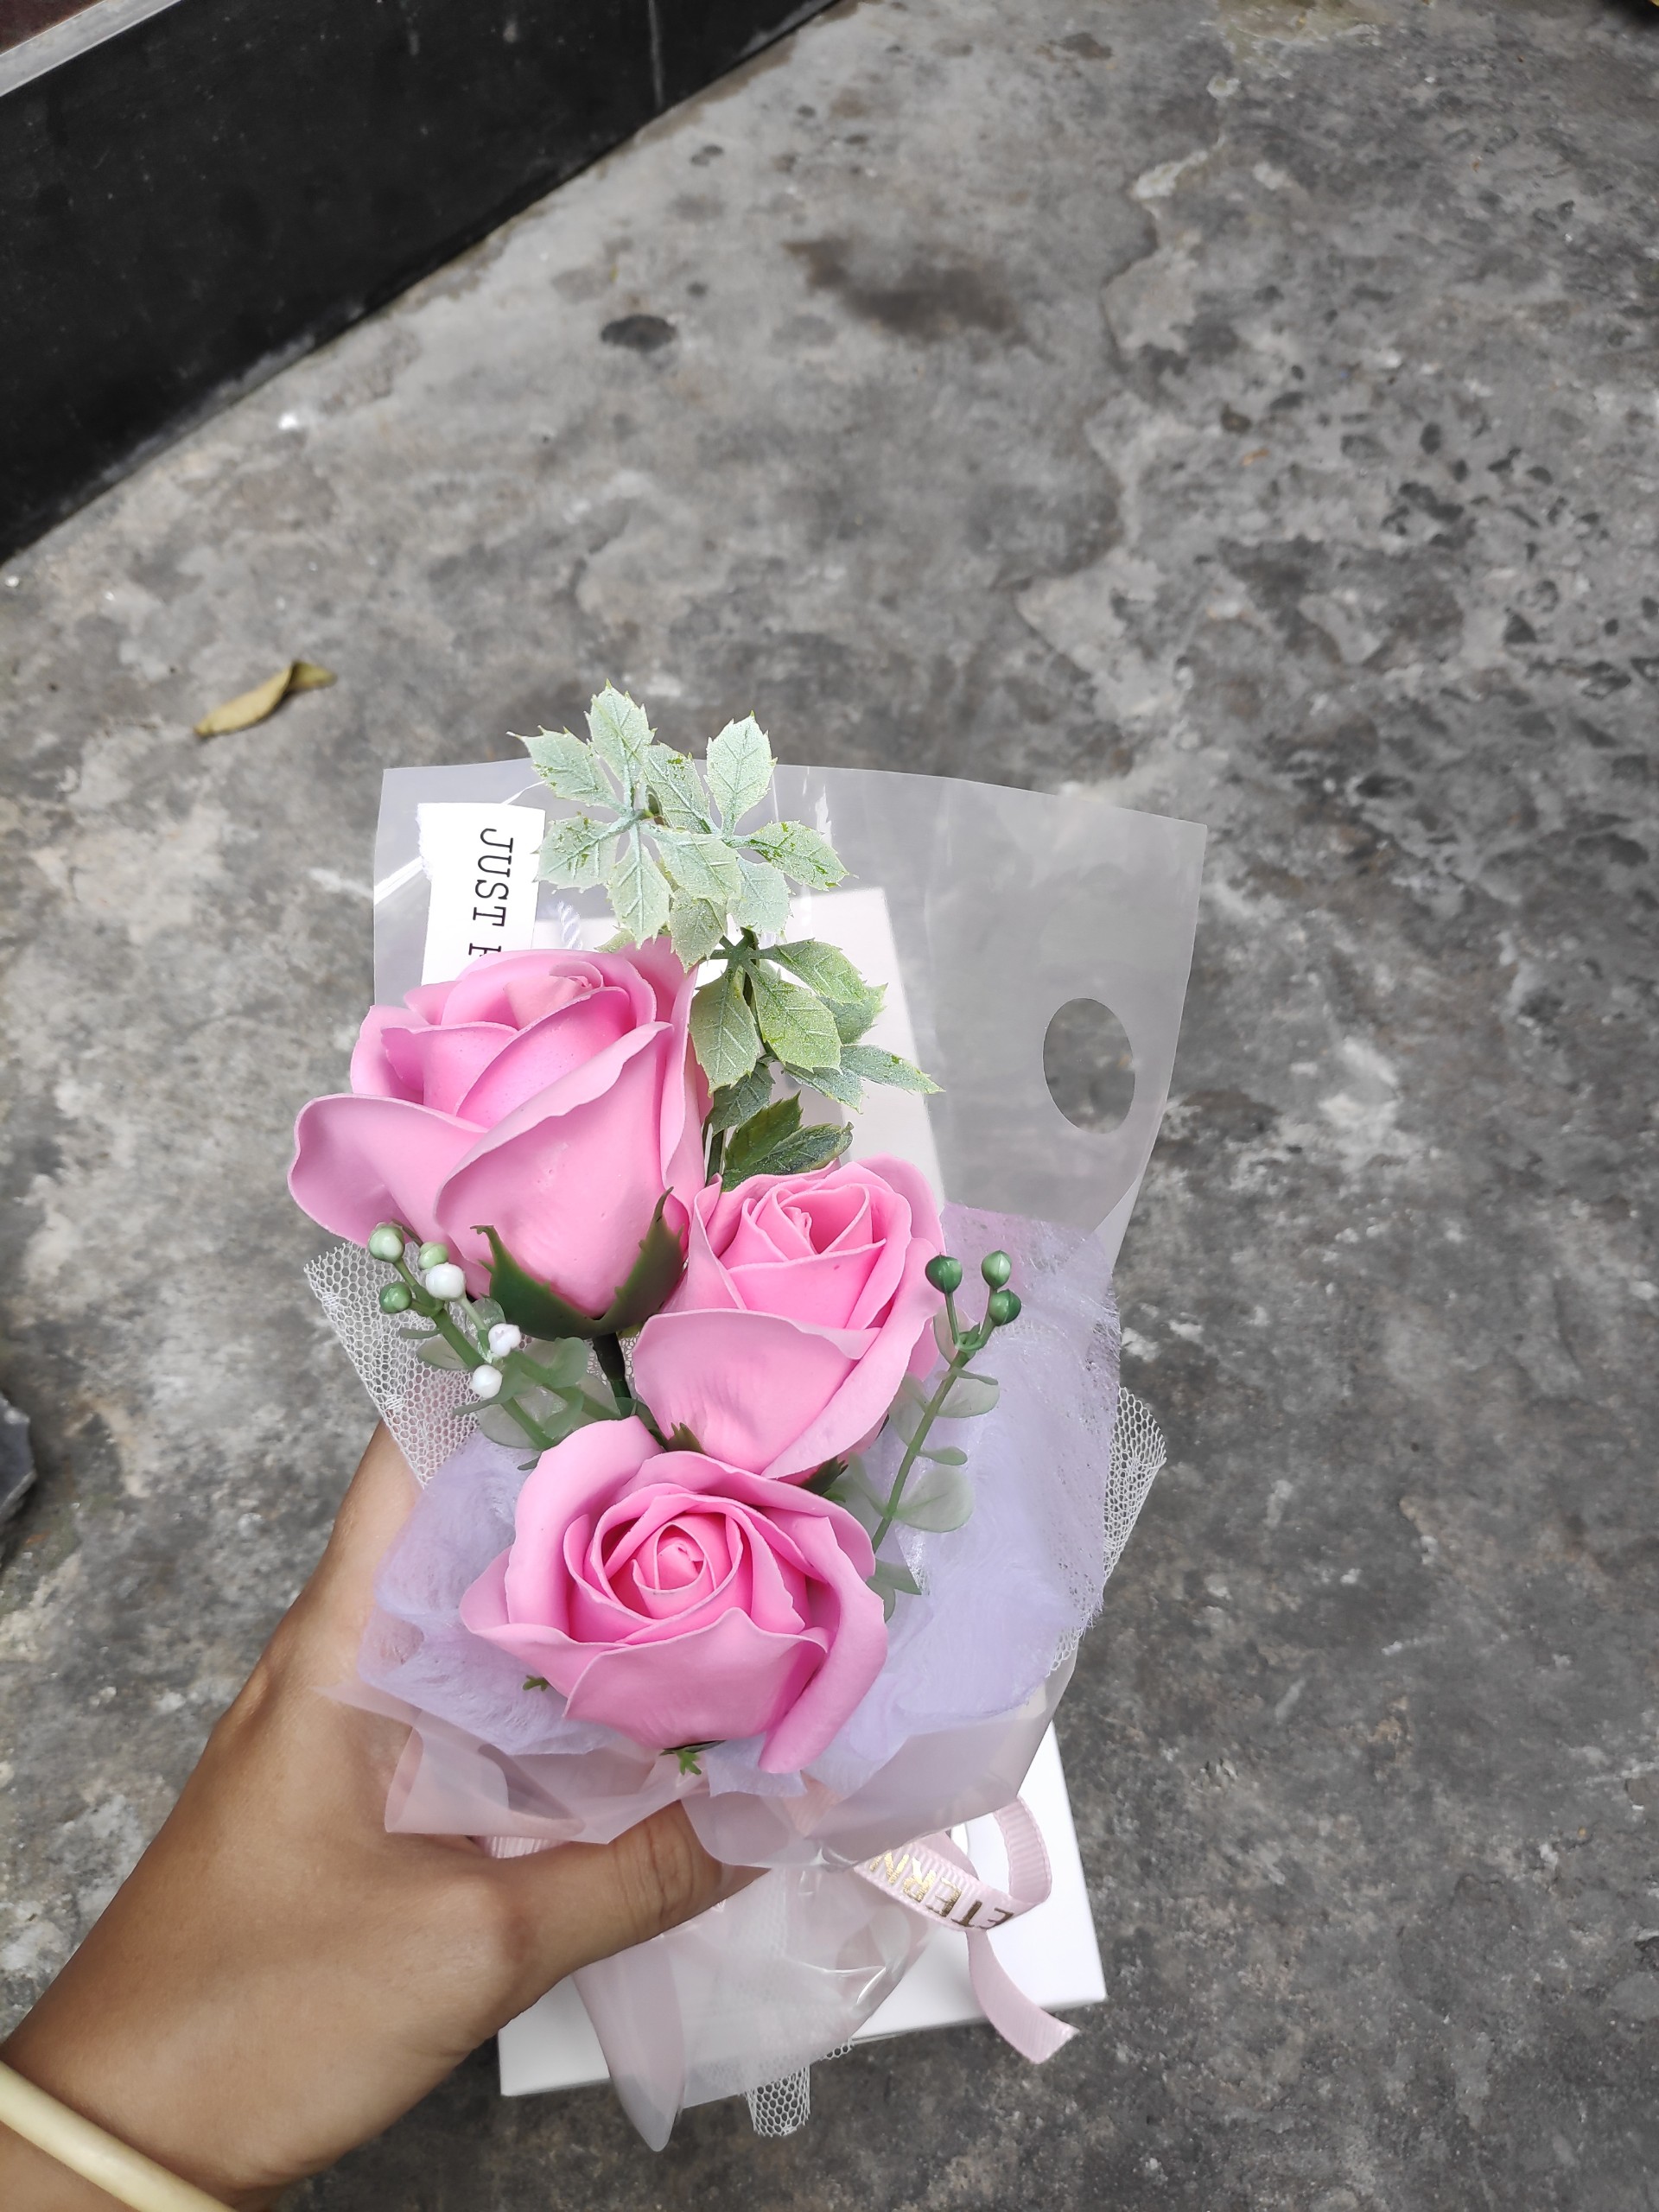 Hoa hồng sáp 3 bông tặng kèm giỏ xách V.6 màu ngẫu nhiên